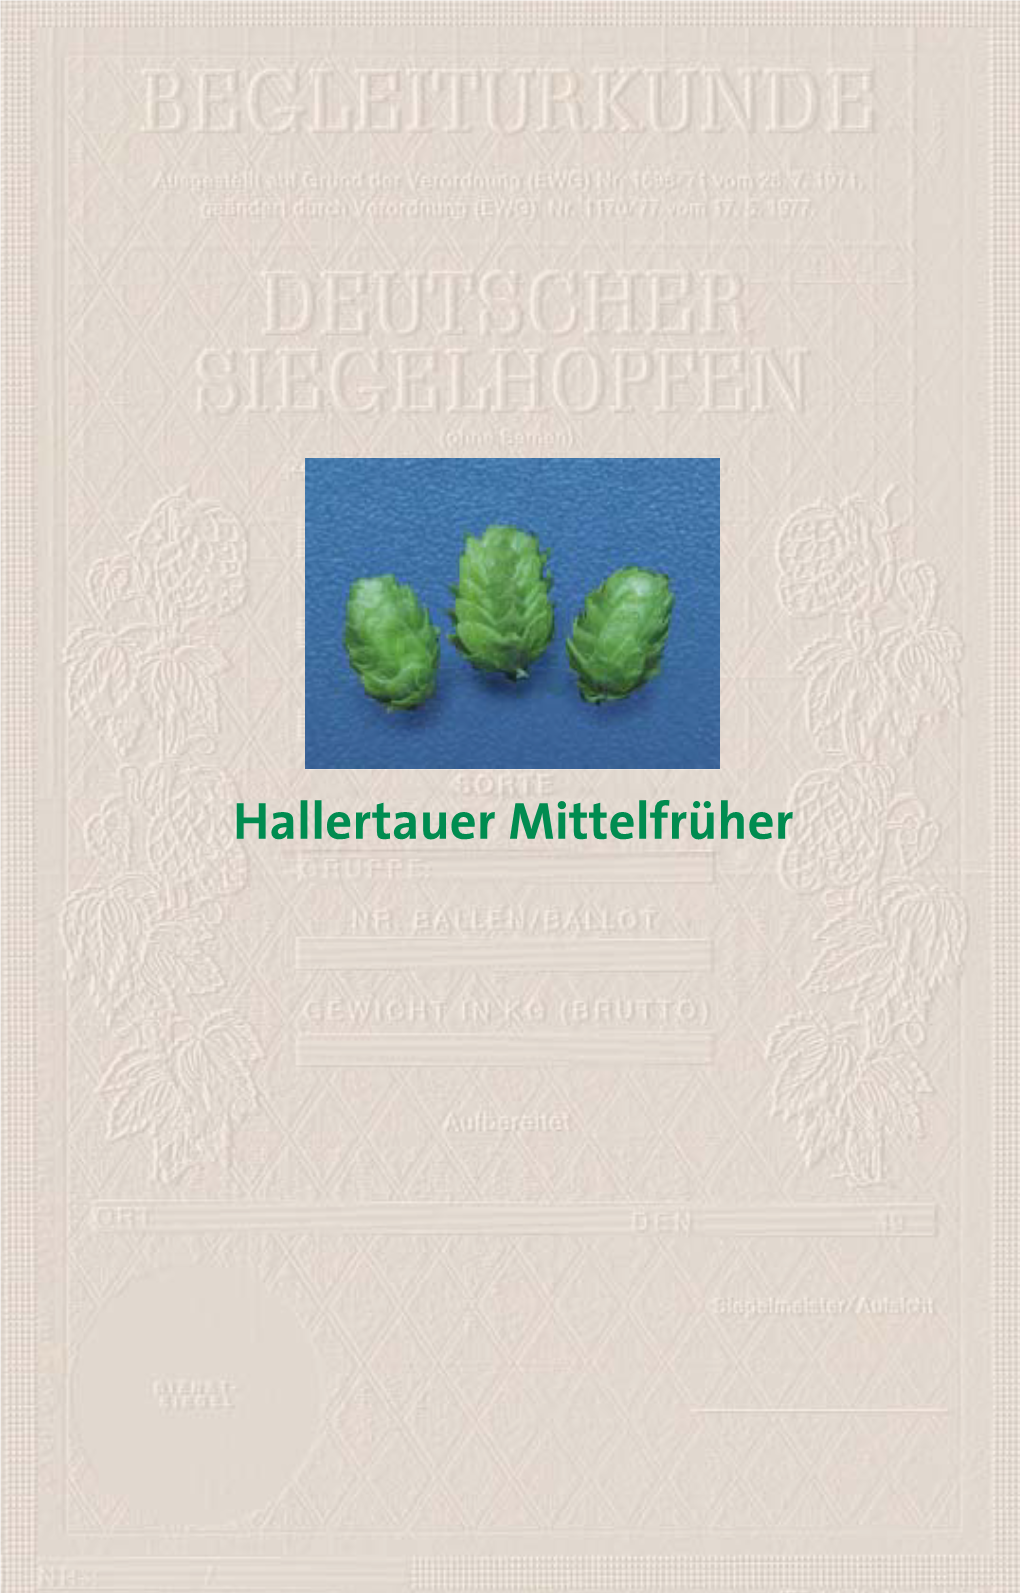 Hallertauer Mittelfrüher Characteristics